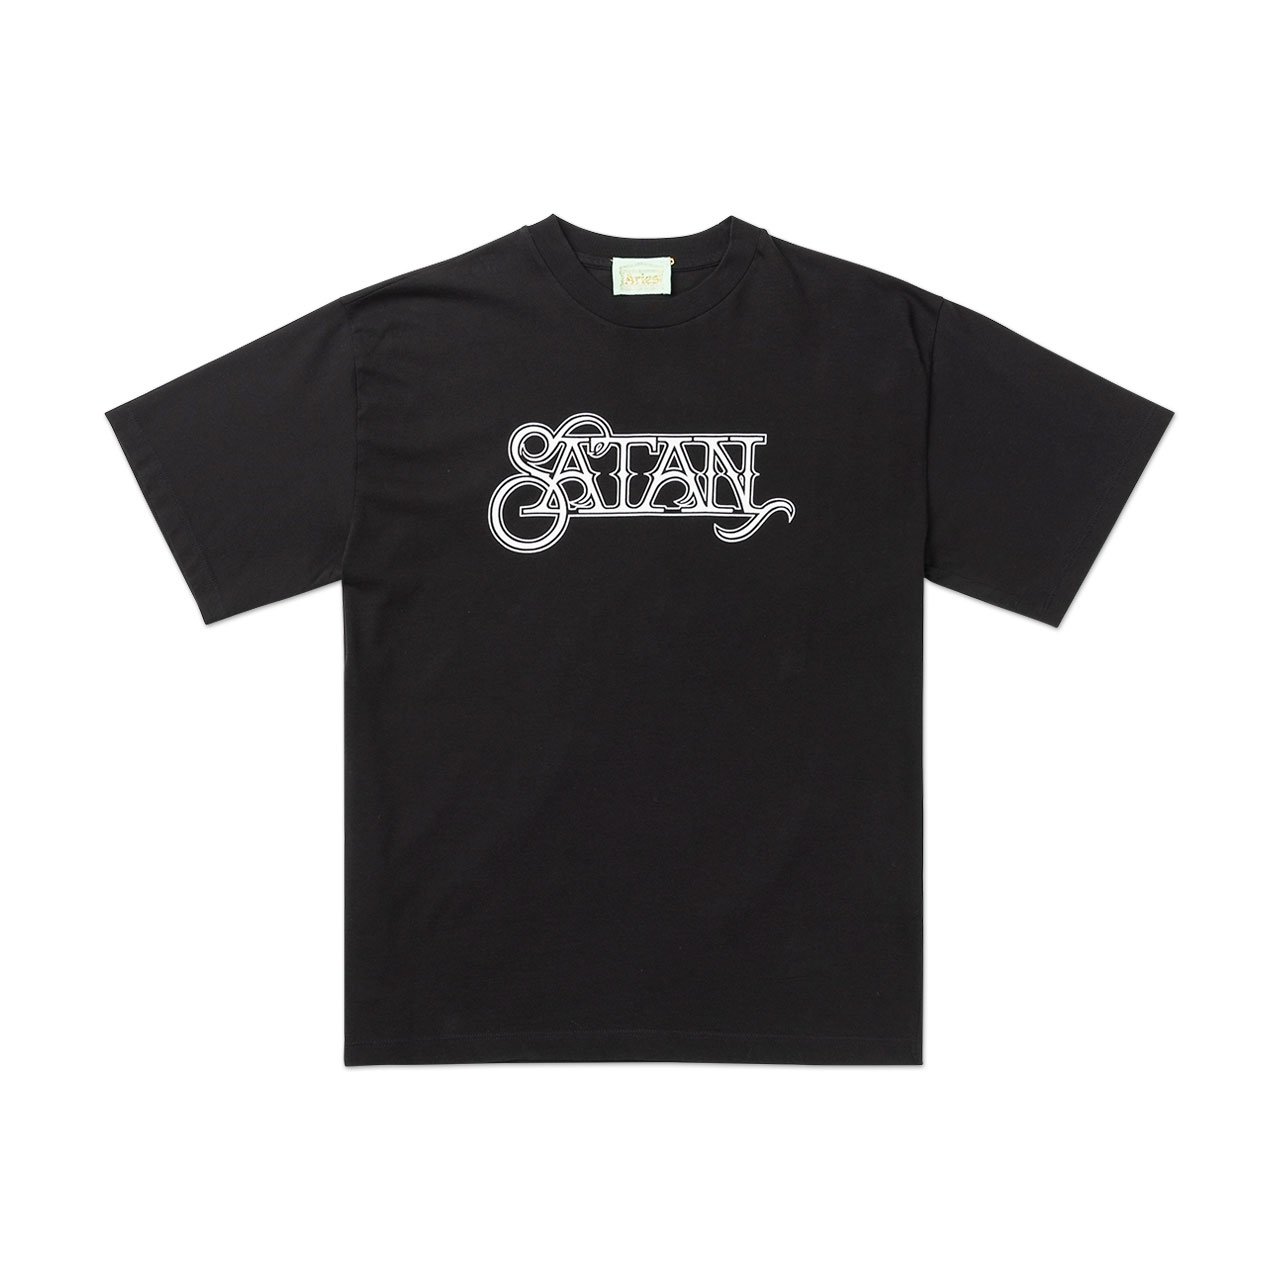 aries satan t-shirt (black) - fqar60004 - a.plus - Image - 1